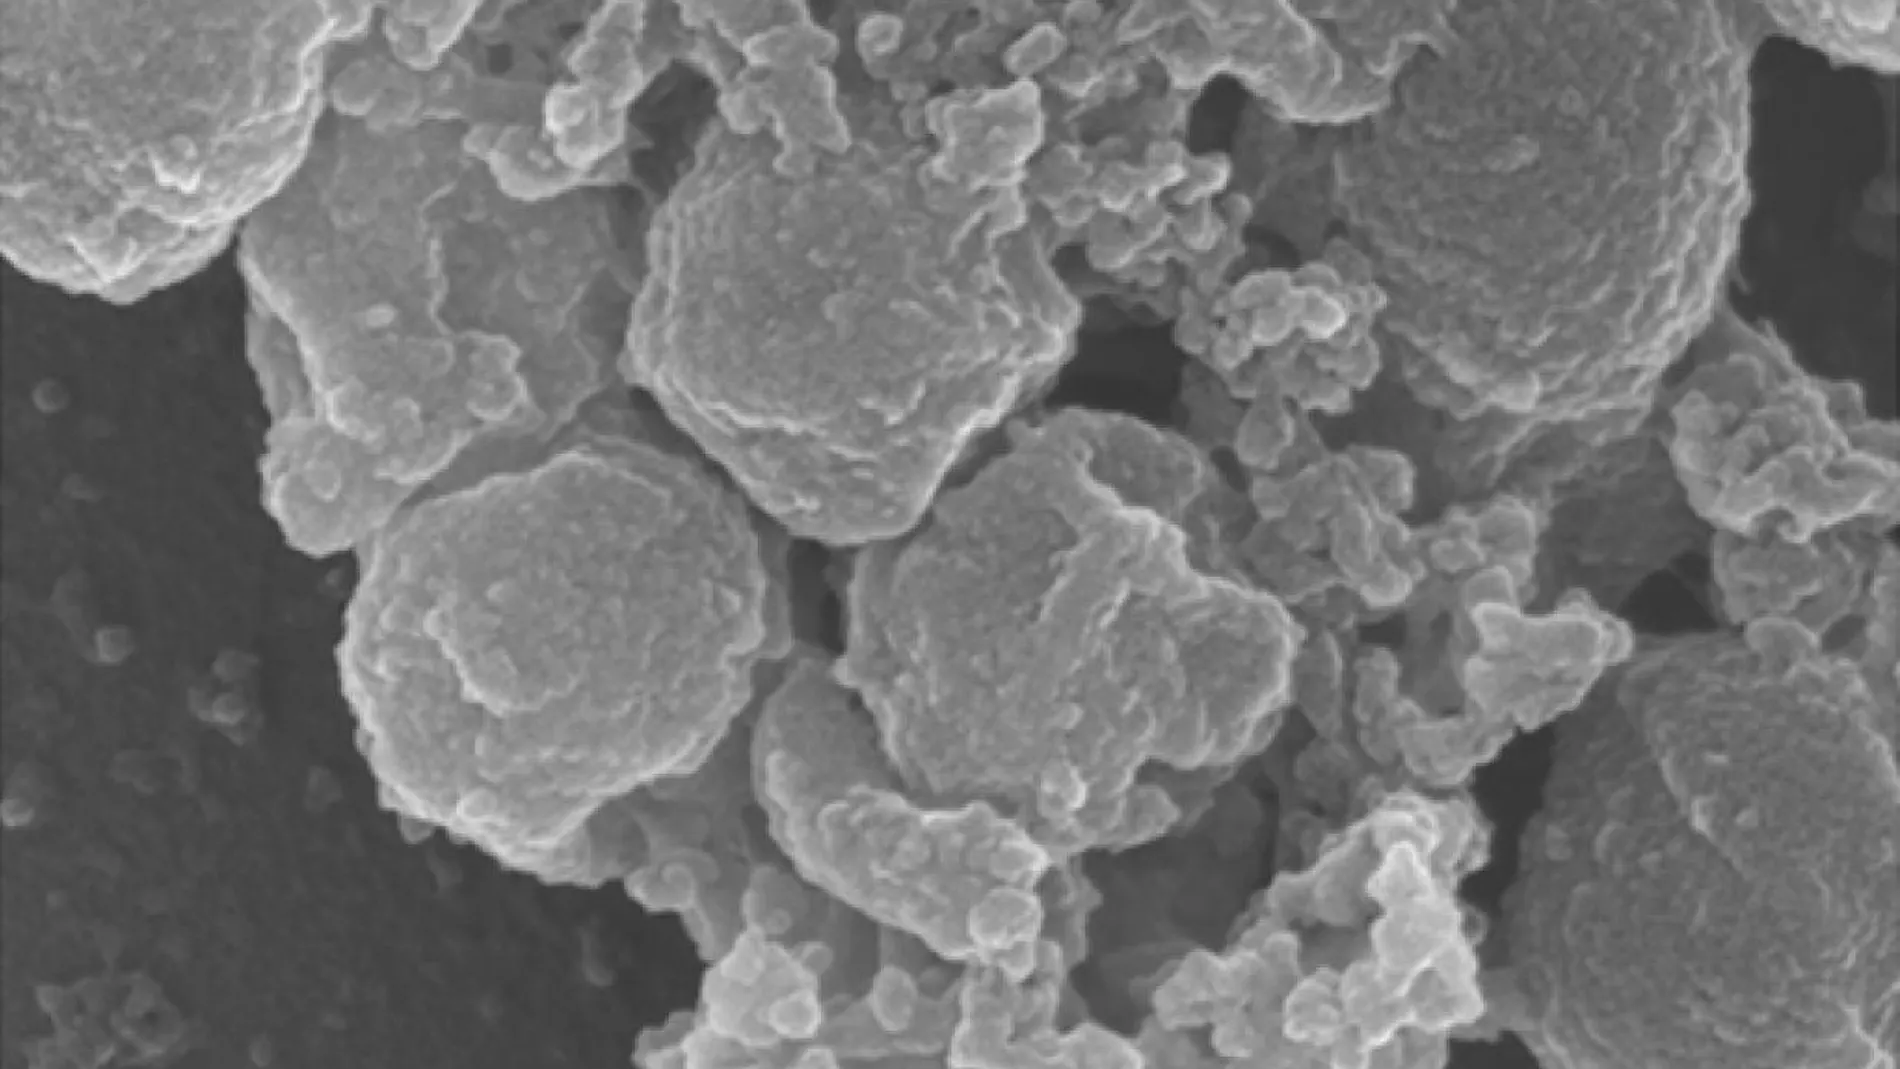 Grupo de Staphylococcus aureus formando una “piñata” tras aplicarles la proteína HDMP, que hace que las bacterias se peguen las unas a las otras. En esta imagen de microscopio electrónico vemos al menos siete bacterias (las pelotas más grandes) acompañadas de material más pequeño, parte del cual pueden ser las “ataduras” generadas por HDMP.